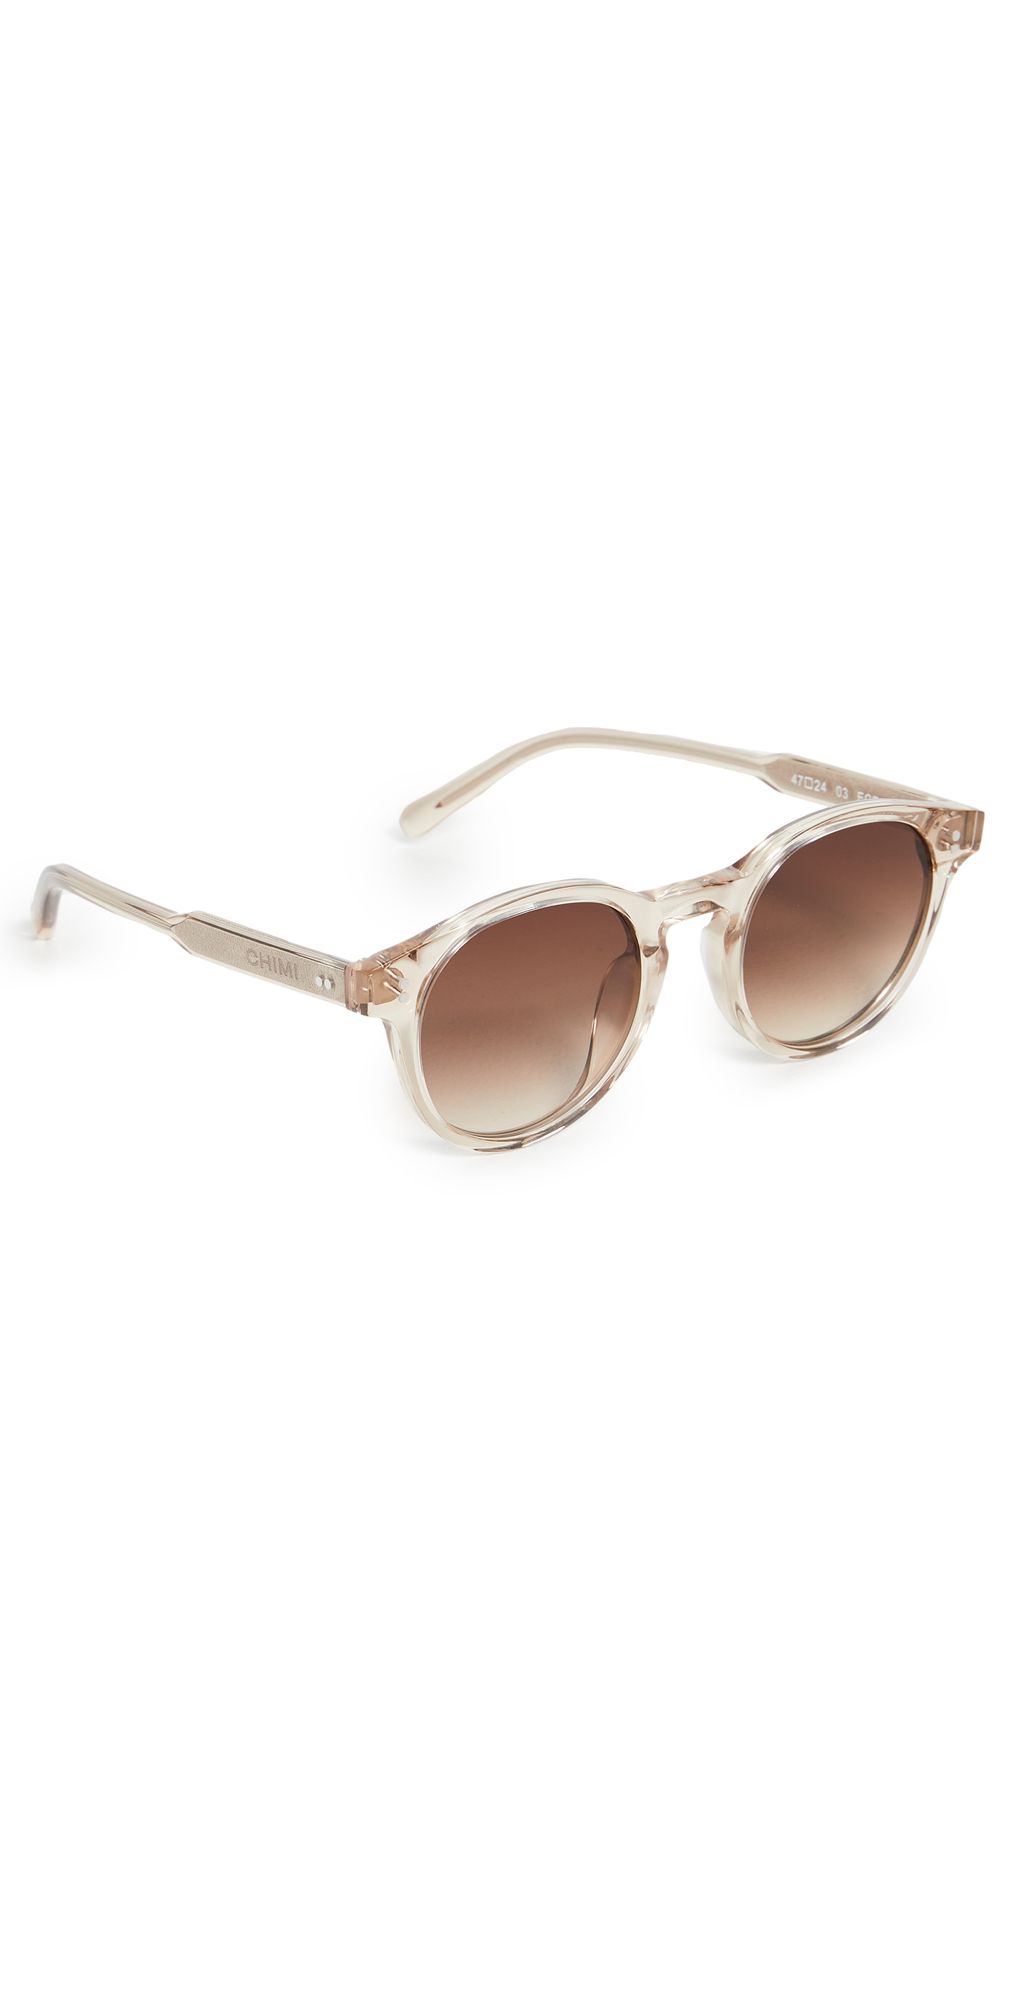 03 Sunglasses | Shopbop